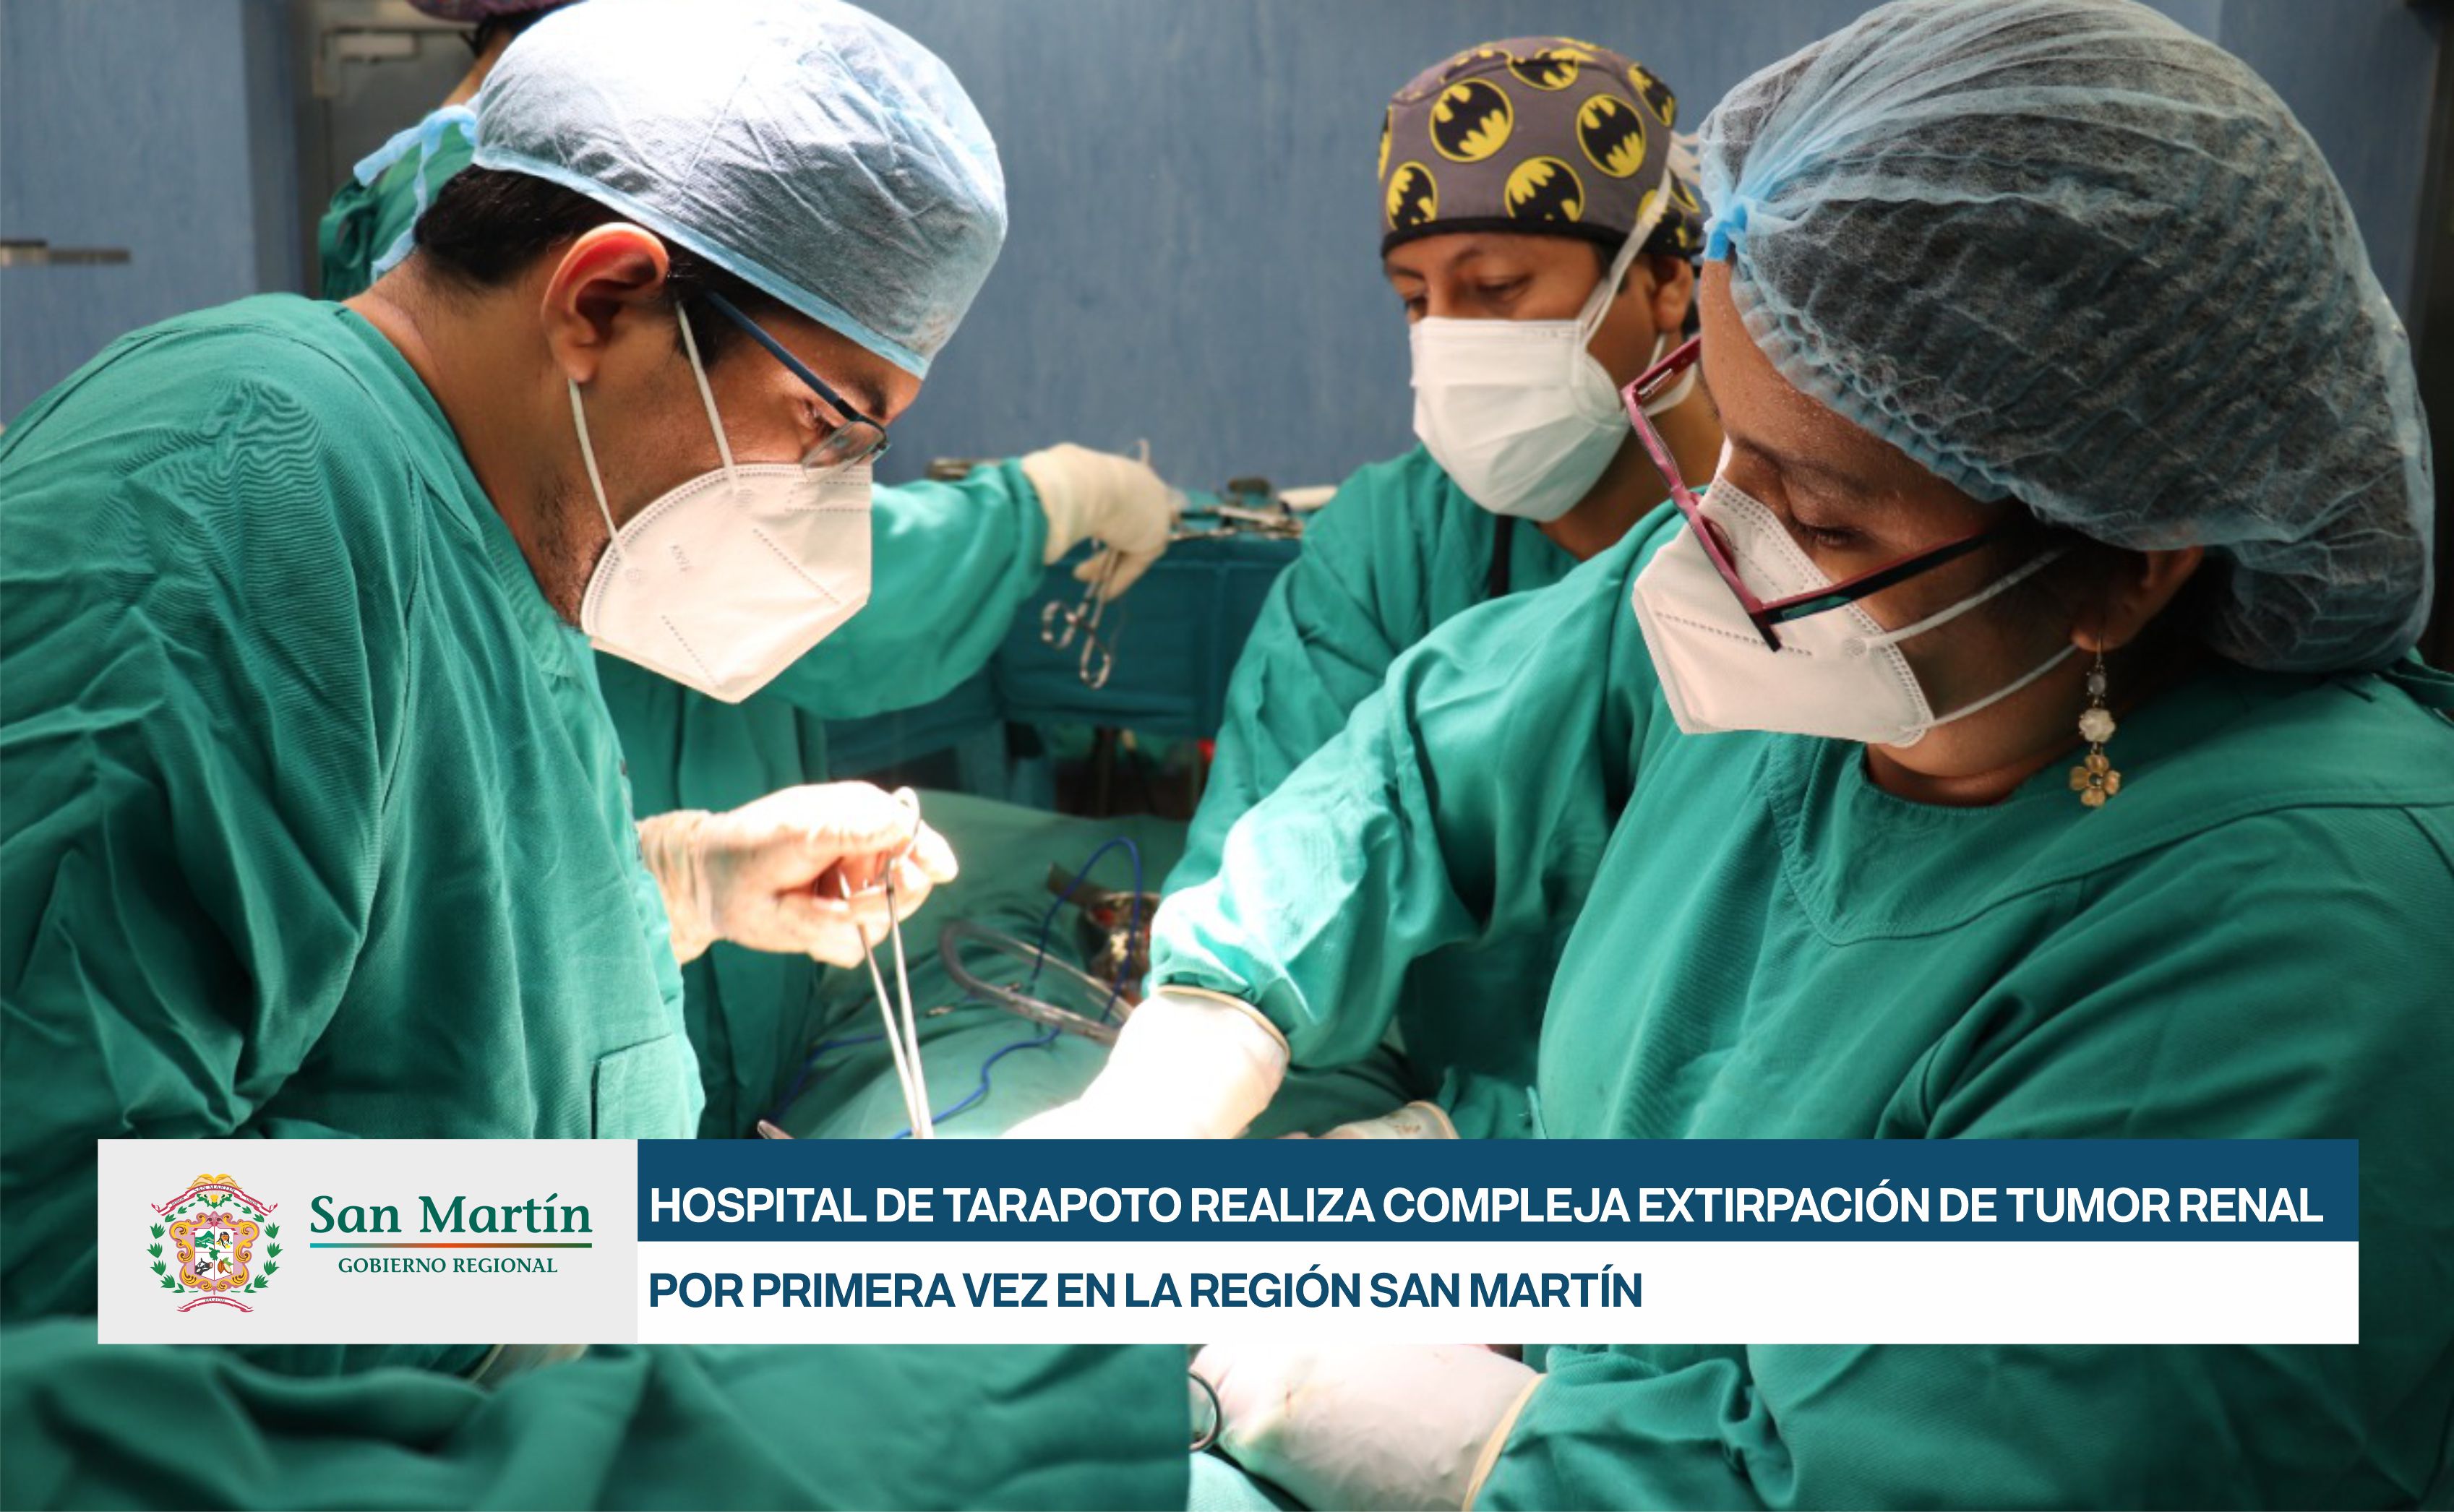 HOSPITAL DE TARAPOTO REALIZA COMPLEJA EXTIRPACIÓN DE TUMOR RENAL POR PRIMERA VEZ EN LA REGIÓN SAN MARTÍN 